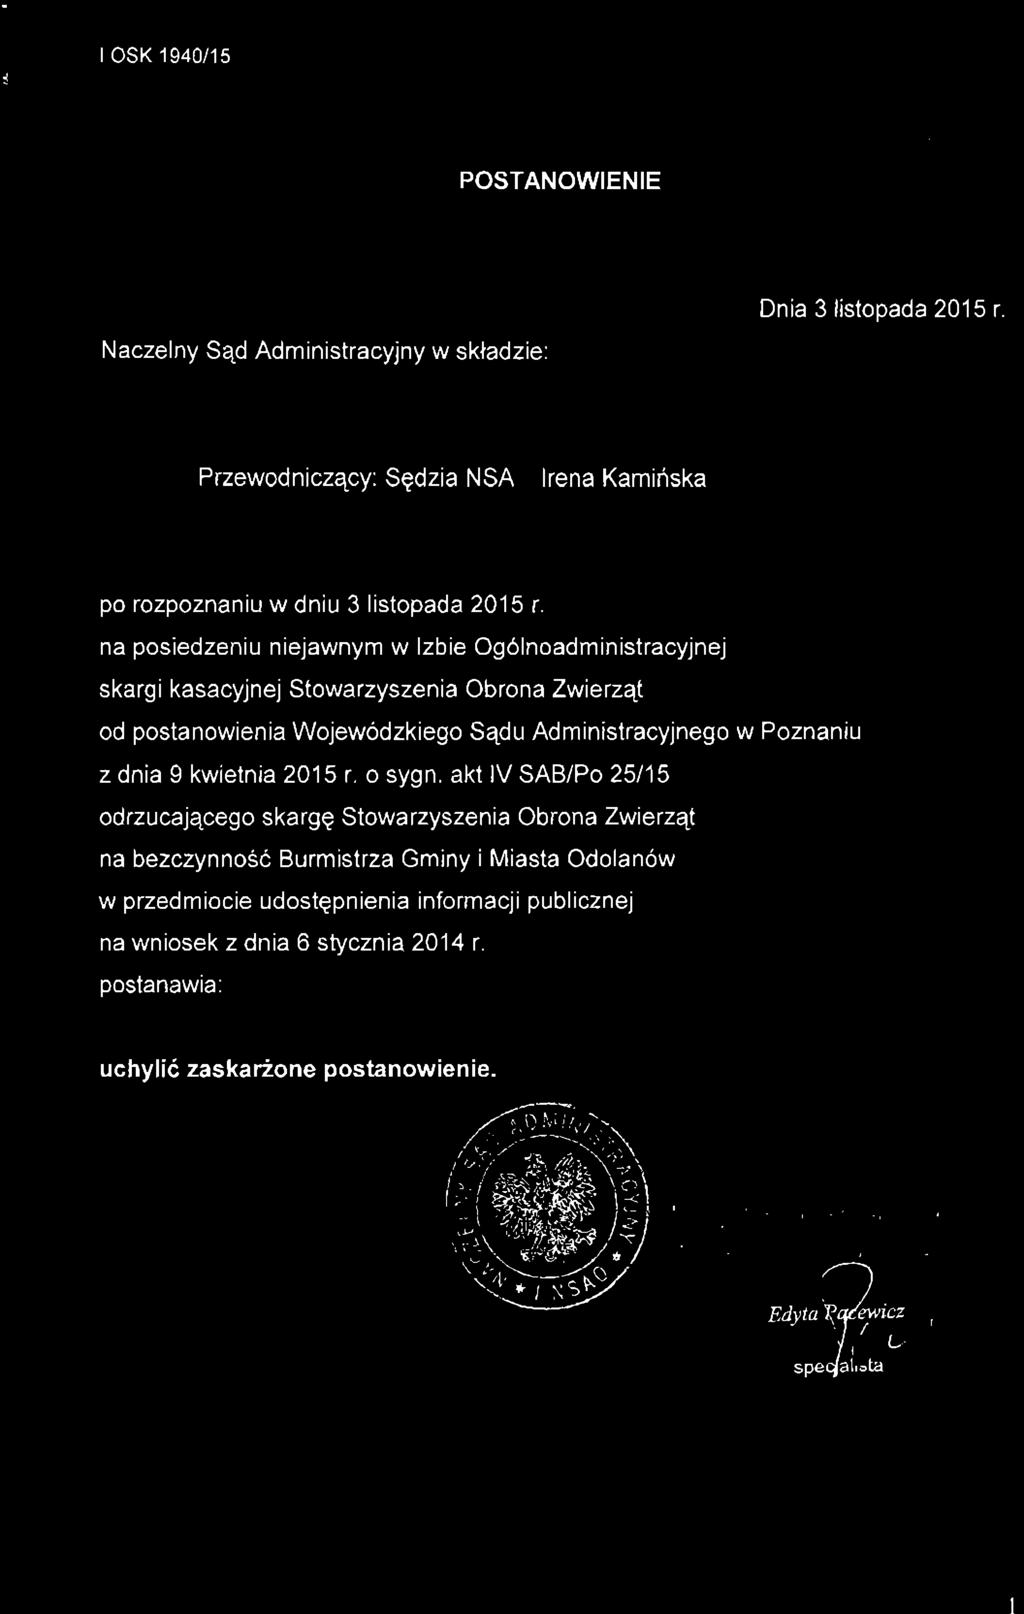 POSTANOWIENIE Naczelny Sąd Administracyjny w składzie: Dnia 3 listopada 2015 r. Przewodniczący: Sędzia NSA Irena Kamińska po rozpoznaniu w dniu 3 listopada 2015 r.